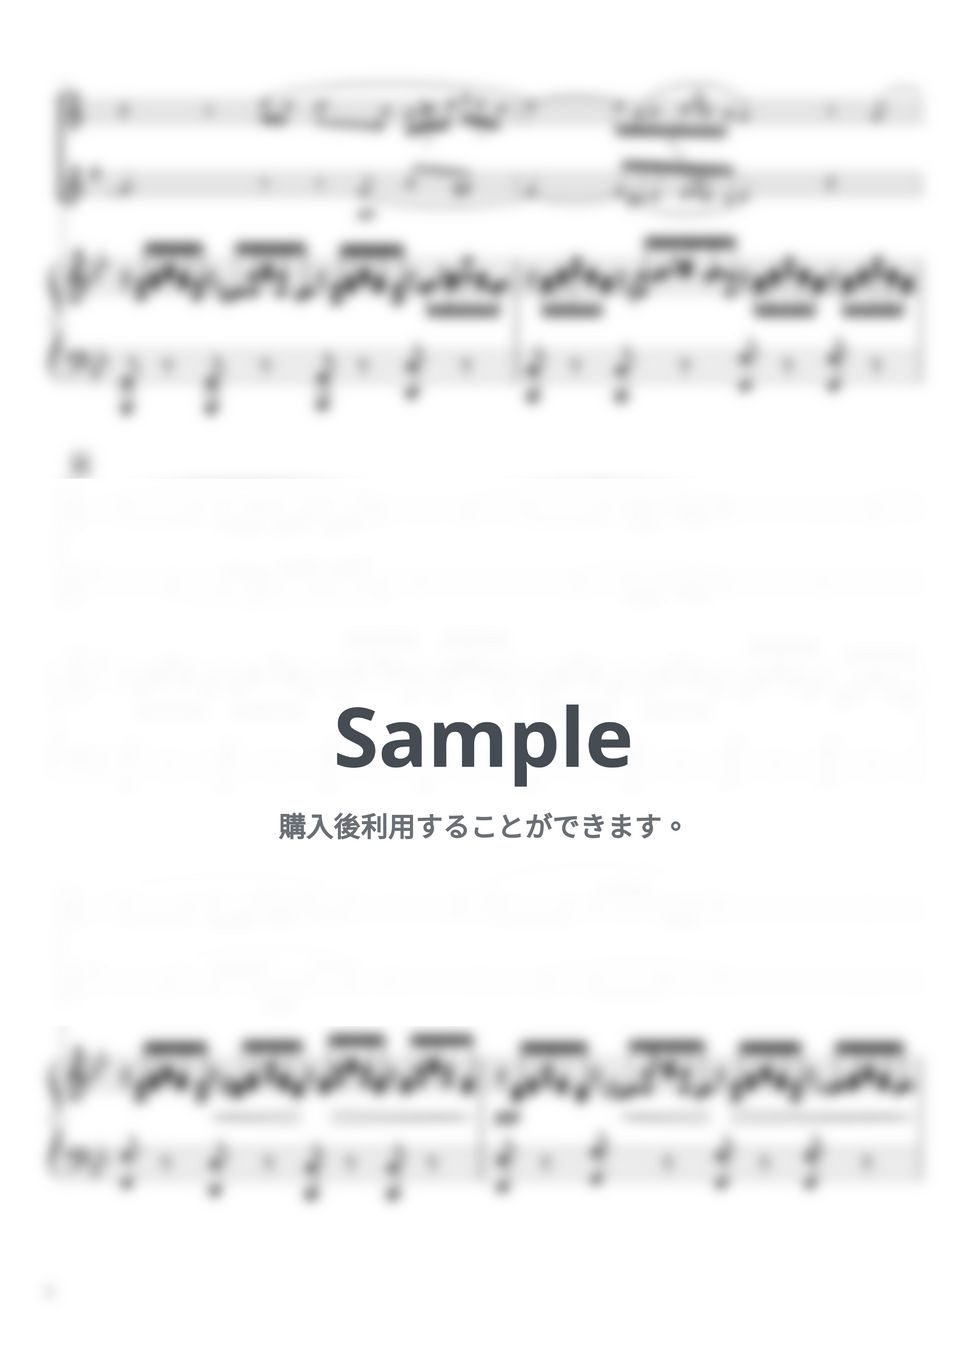 シューベルト - アヴェマリア (B♭・ピアノトリオ/ソプラノサックス＆バリトンサックス二重奏)) by pfkaori